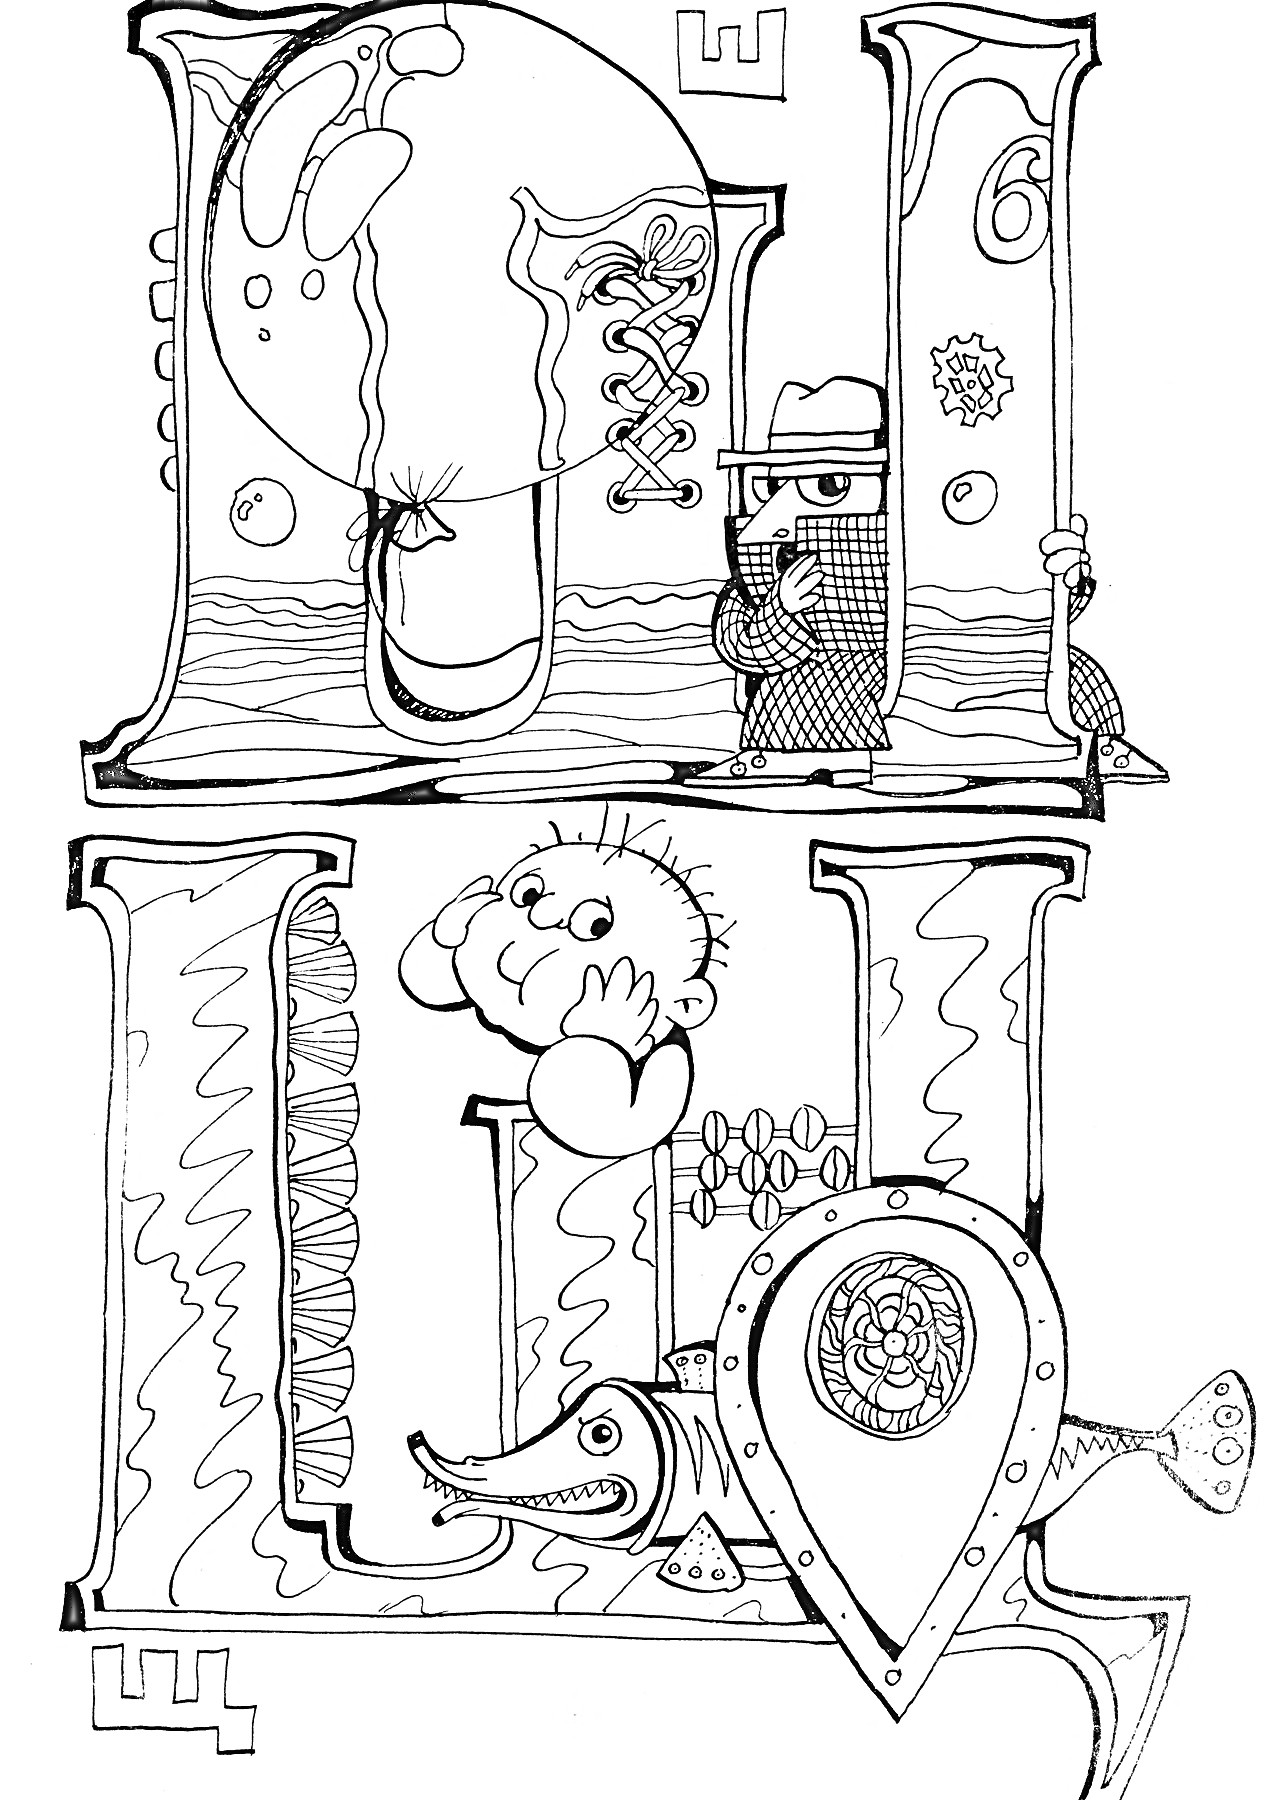 Раскраска Буква Щ с элементами — щупальце, щетина (ёжик), щит, щучка, шпион, 6 (шесть)